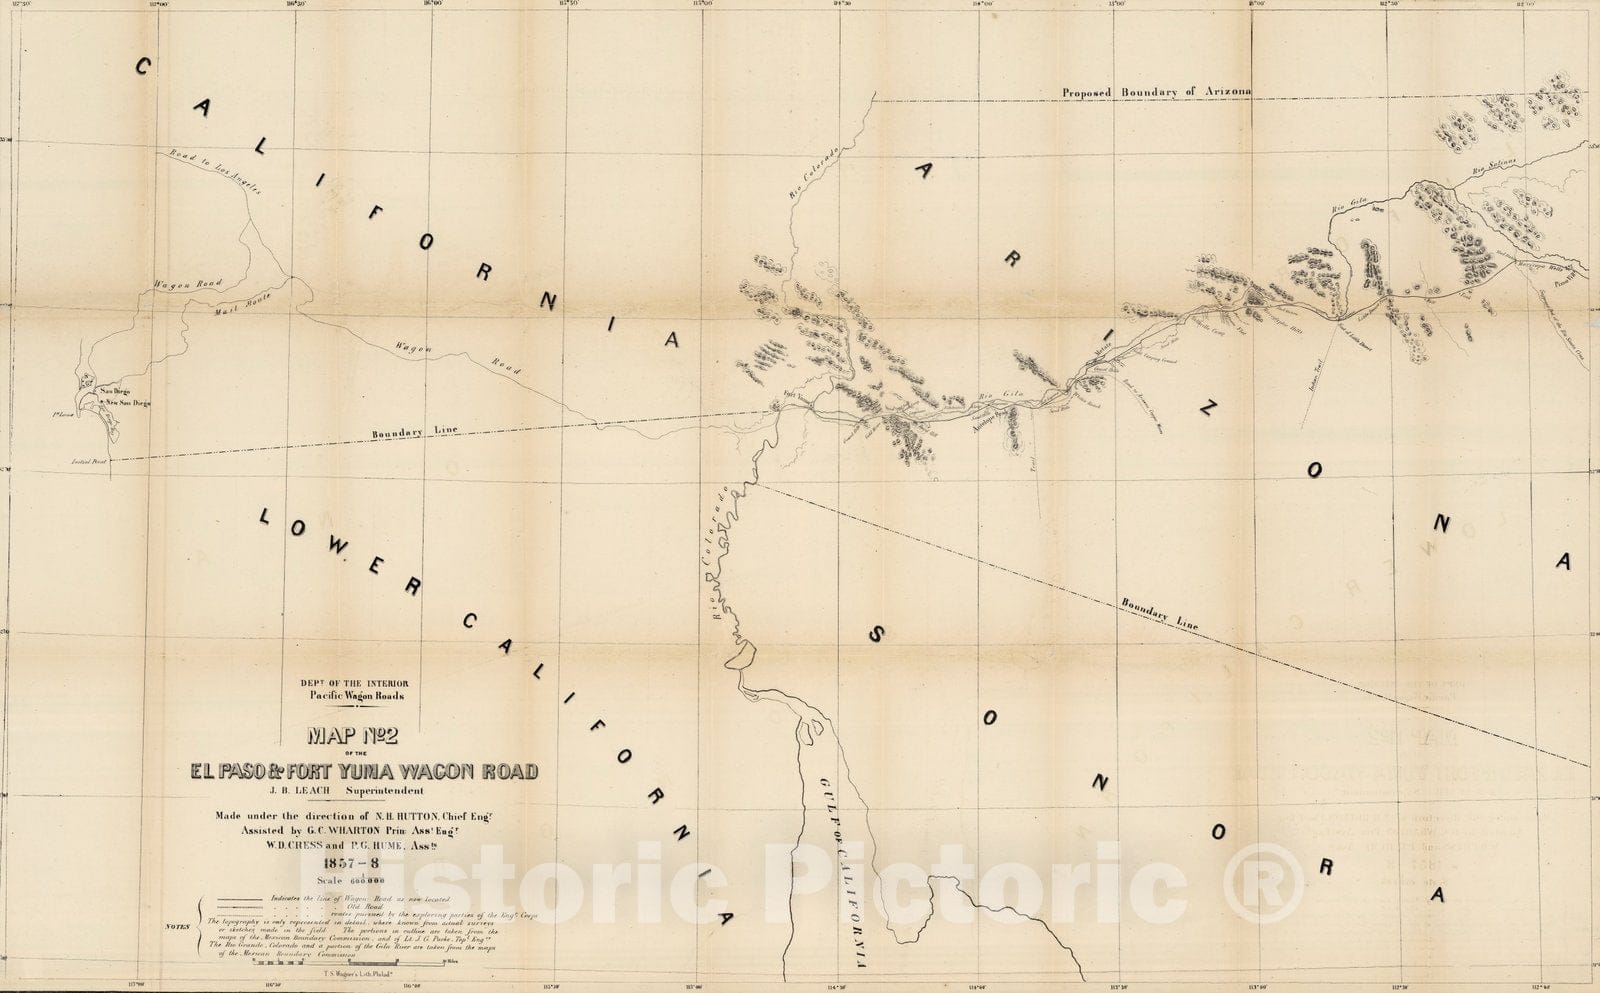 Historic Map : Map No. 2 of the El Paso & Fort Yuma Wagon Road, 1858 - Vintage Wall Art